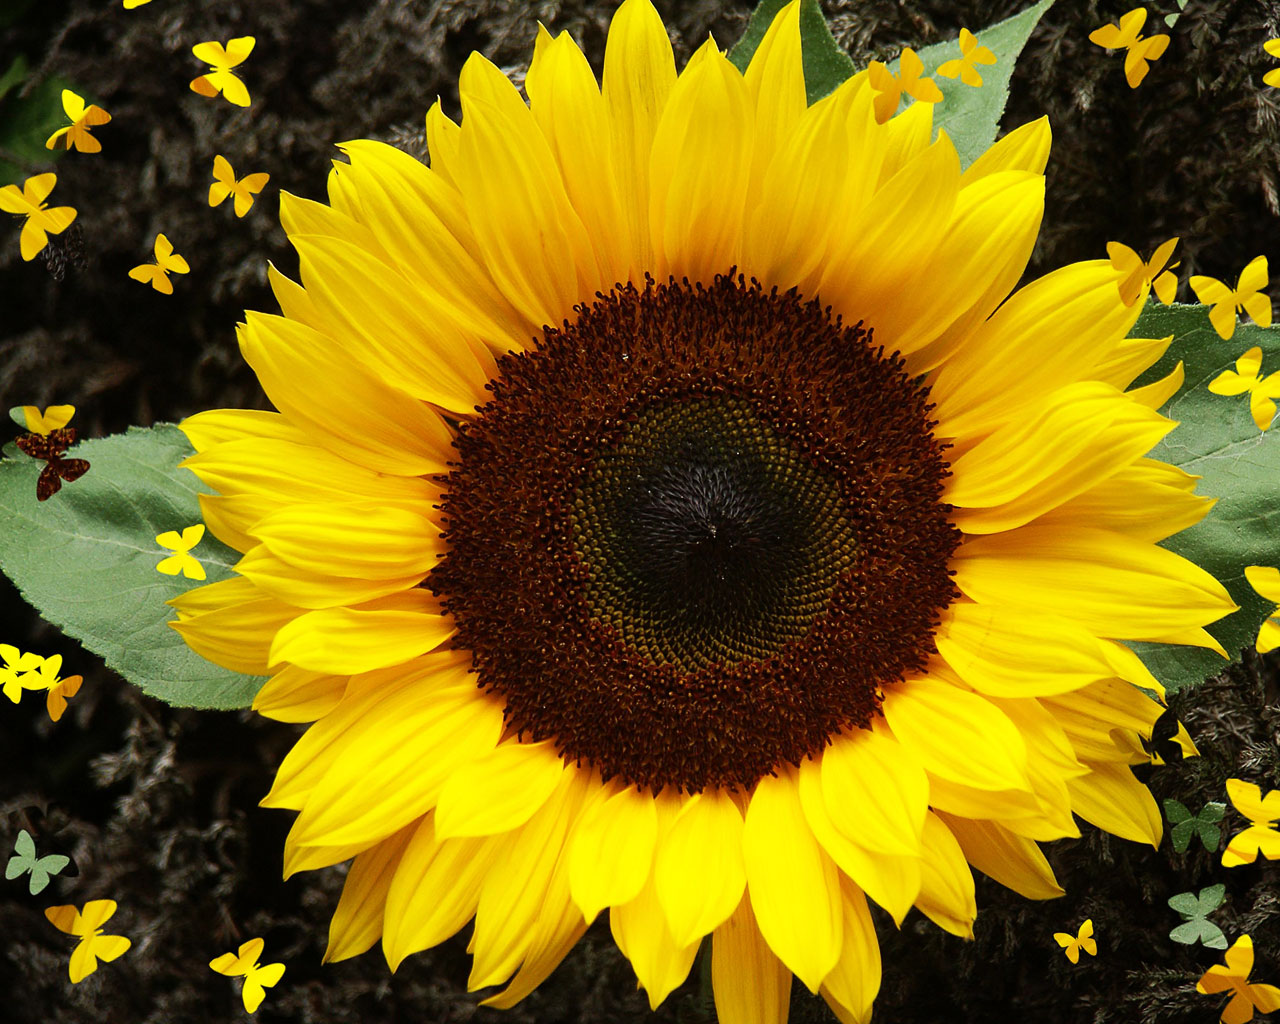 Hãy làm mới màn hình desktop của bạn với hình nền Flowerstory Sunflower [1280x1024] tuyệt đẹp và hoàn toàn miễn phí. Với bộ sưu tập này, bạn sẽ tìm thấy những bức tranh tuyệt vời về hoa hướng dương, không chỉ đẹp mắt mà còn giúp tinh thần của bạn thư giãn và cảm thấy thoải mái.